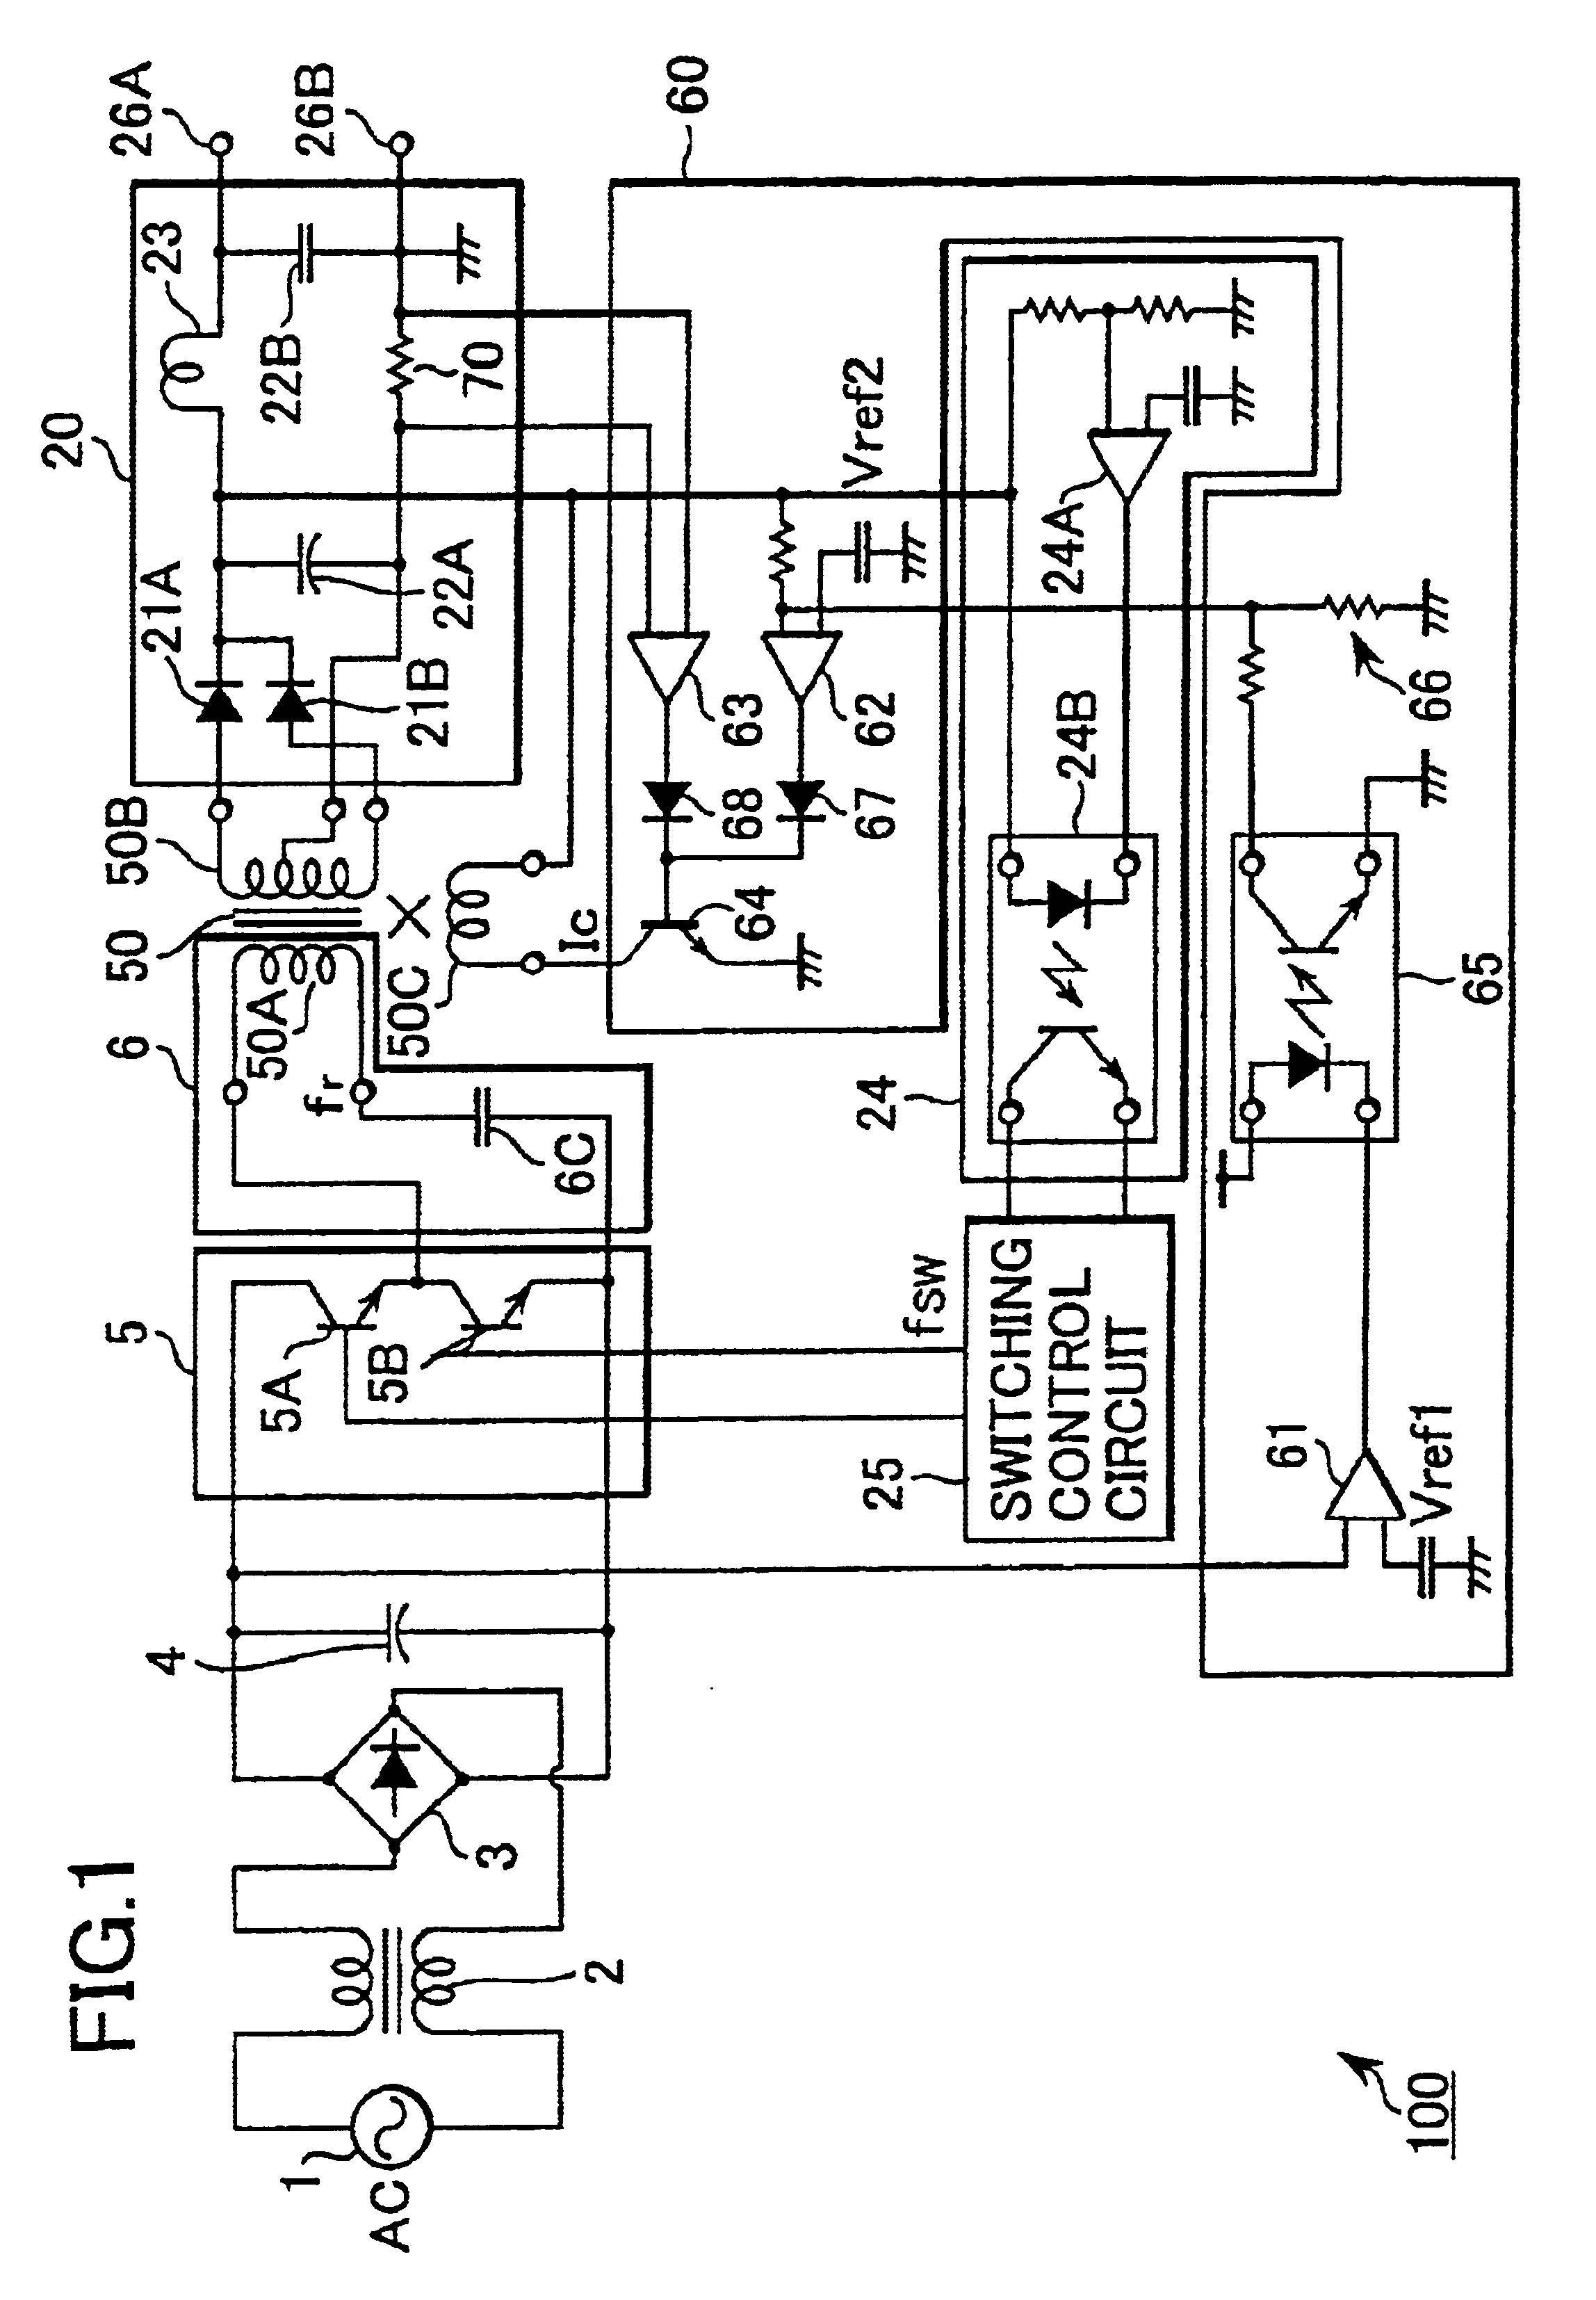 Resonance type switching power supply unit